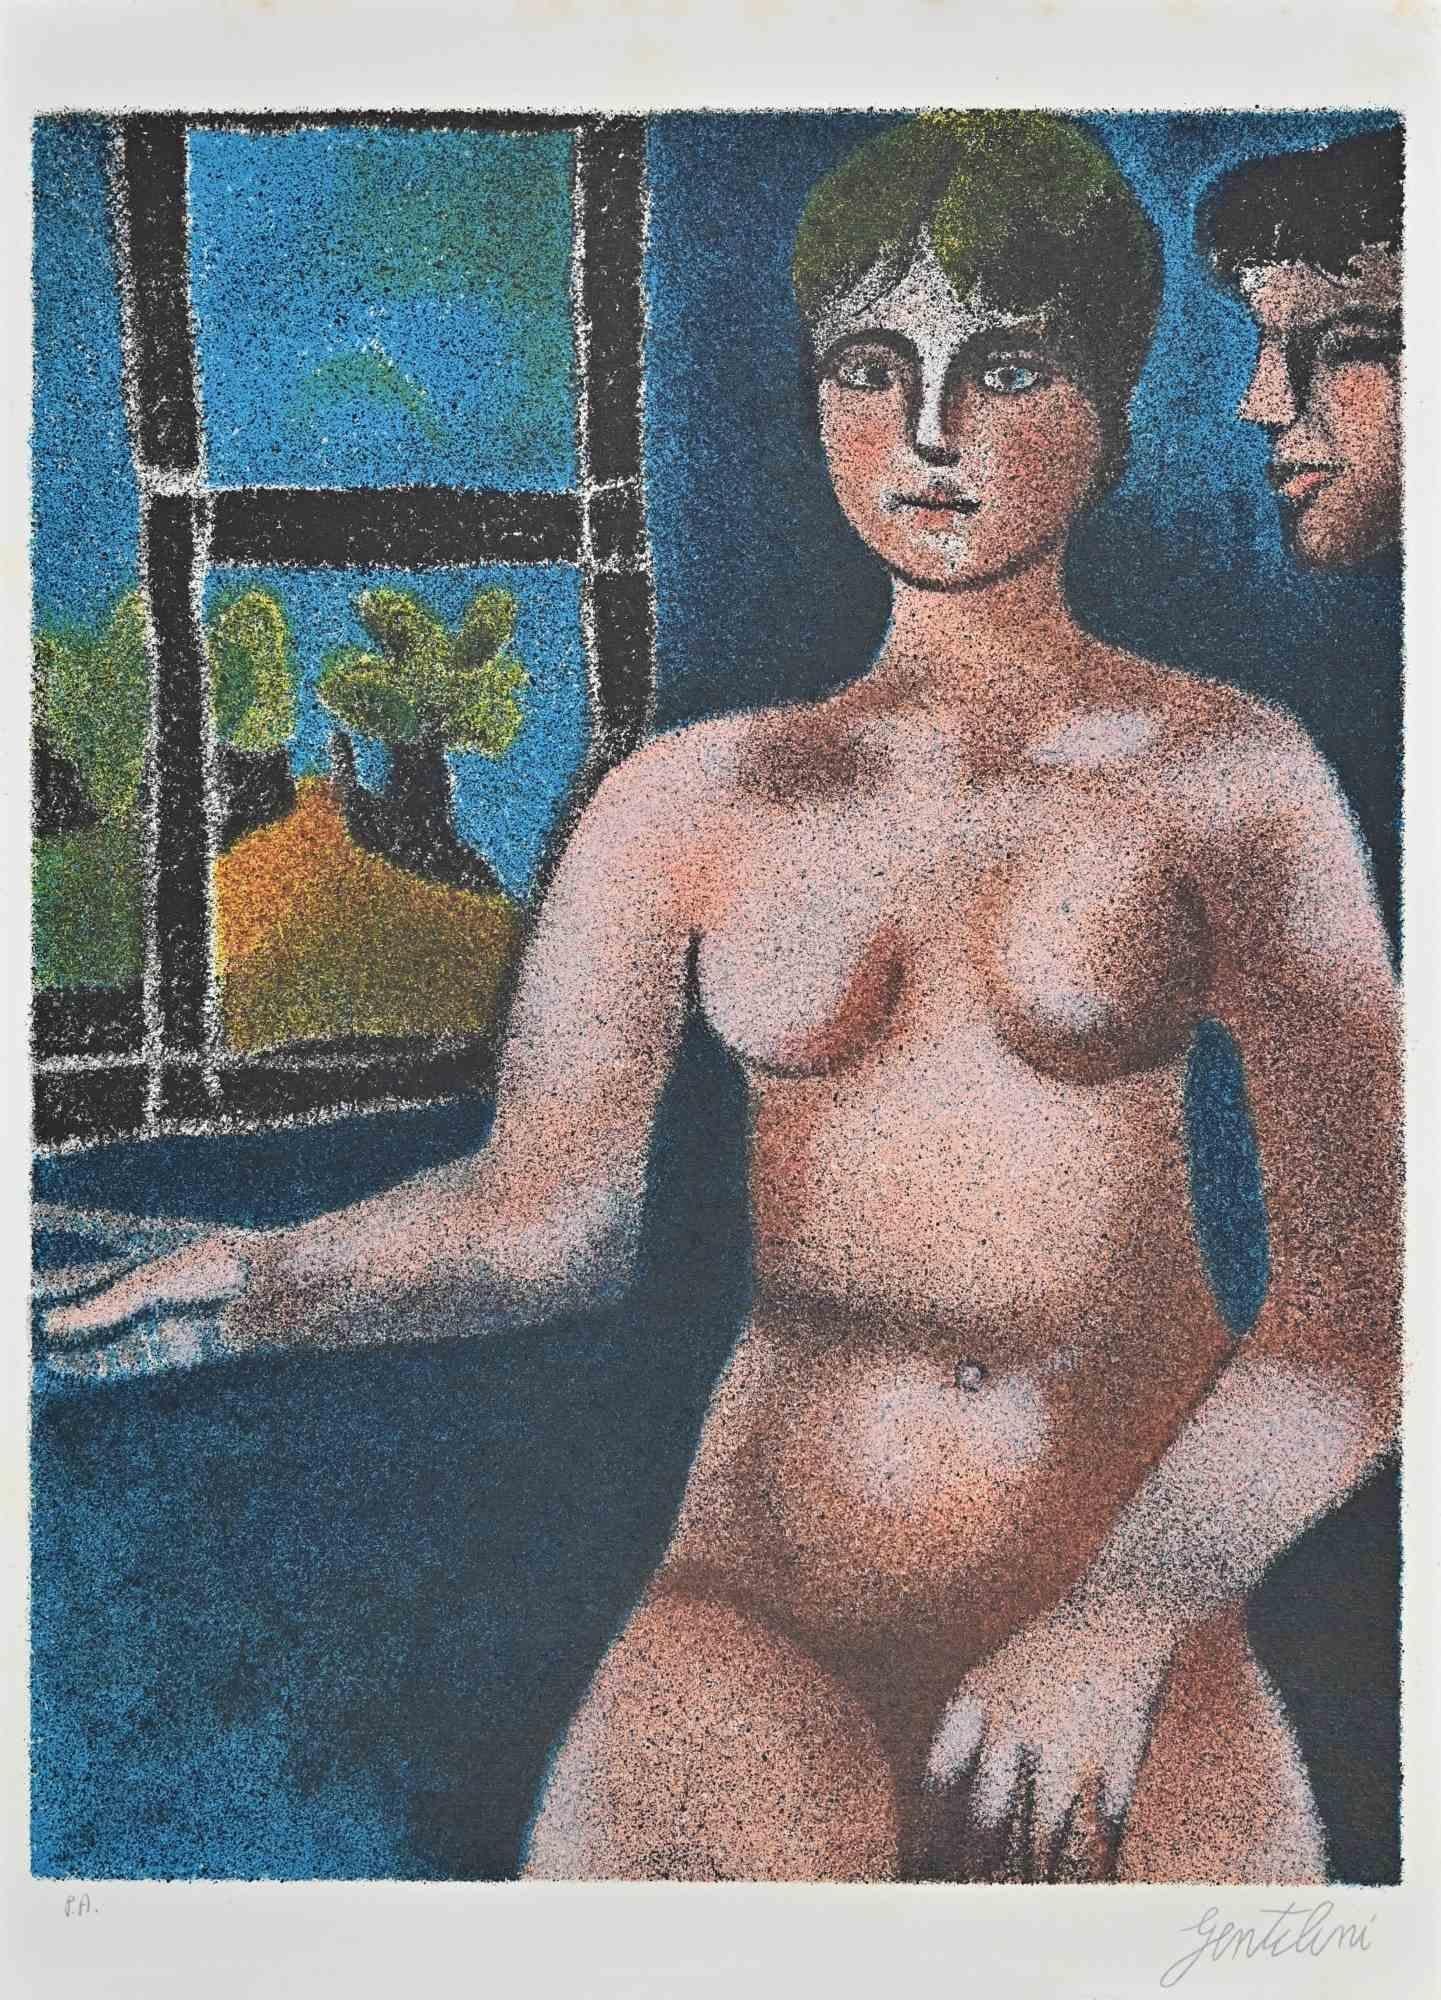 Nude ist eine Lithographie, die Franco Gentilini (italienischer Maler, 1909-1981) im Jahr 1980 geschaffen hat.

Der Erhaltungszustand der Kunstwerke ist ausgezeichnet.

Der Beweis des Künstlers.

Handsigniert.

Franco Gentilini (italienischer Maler,